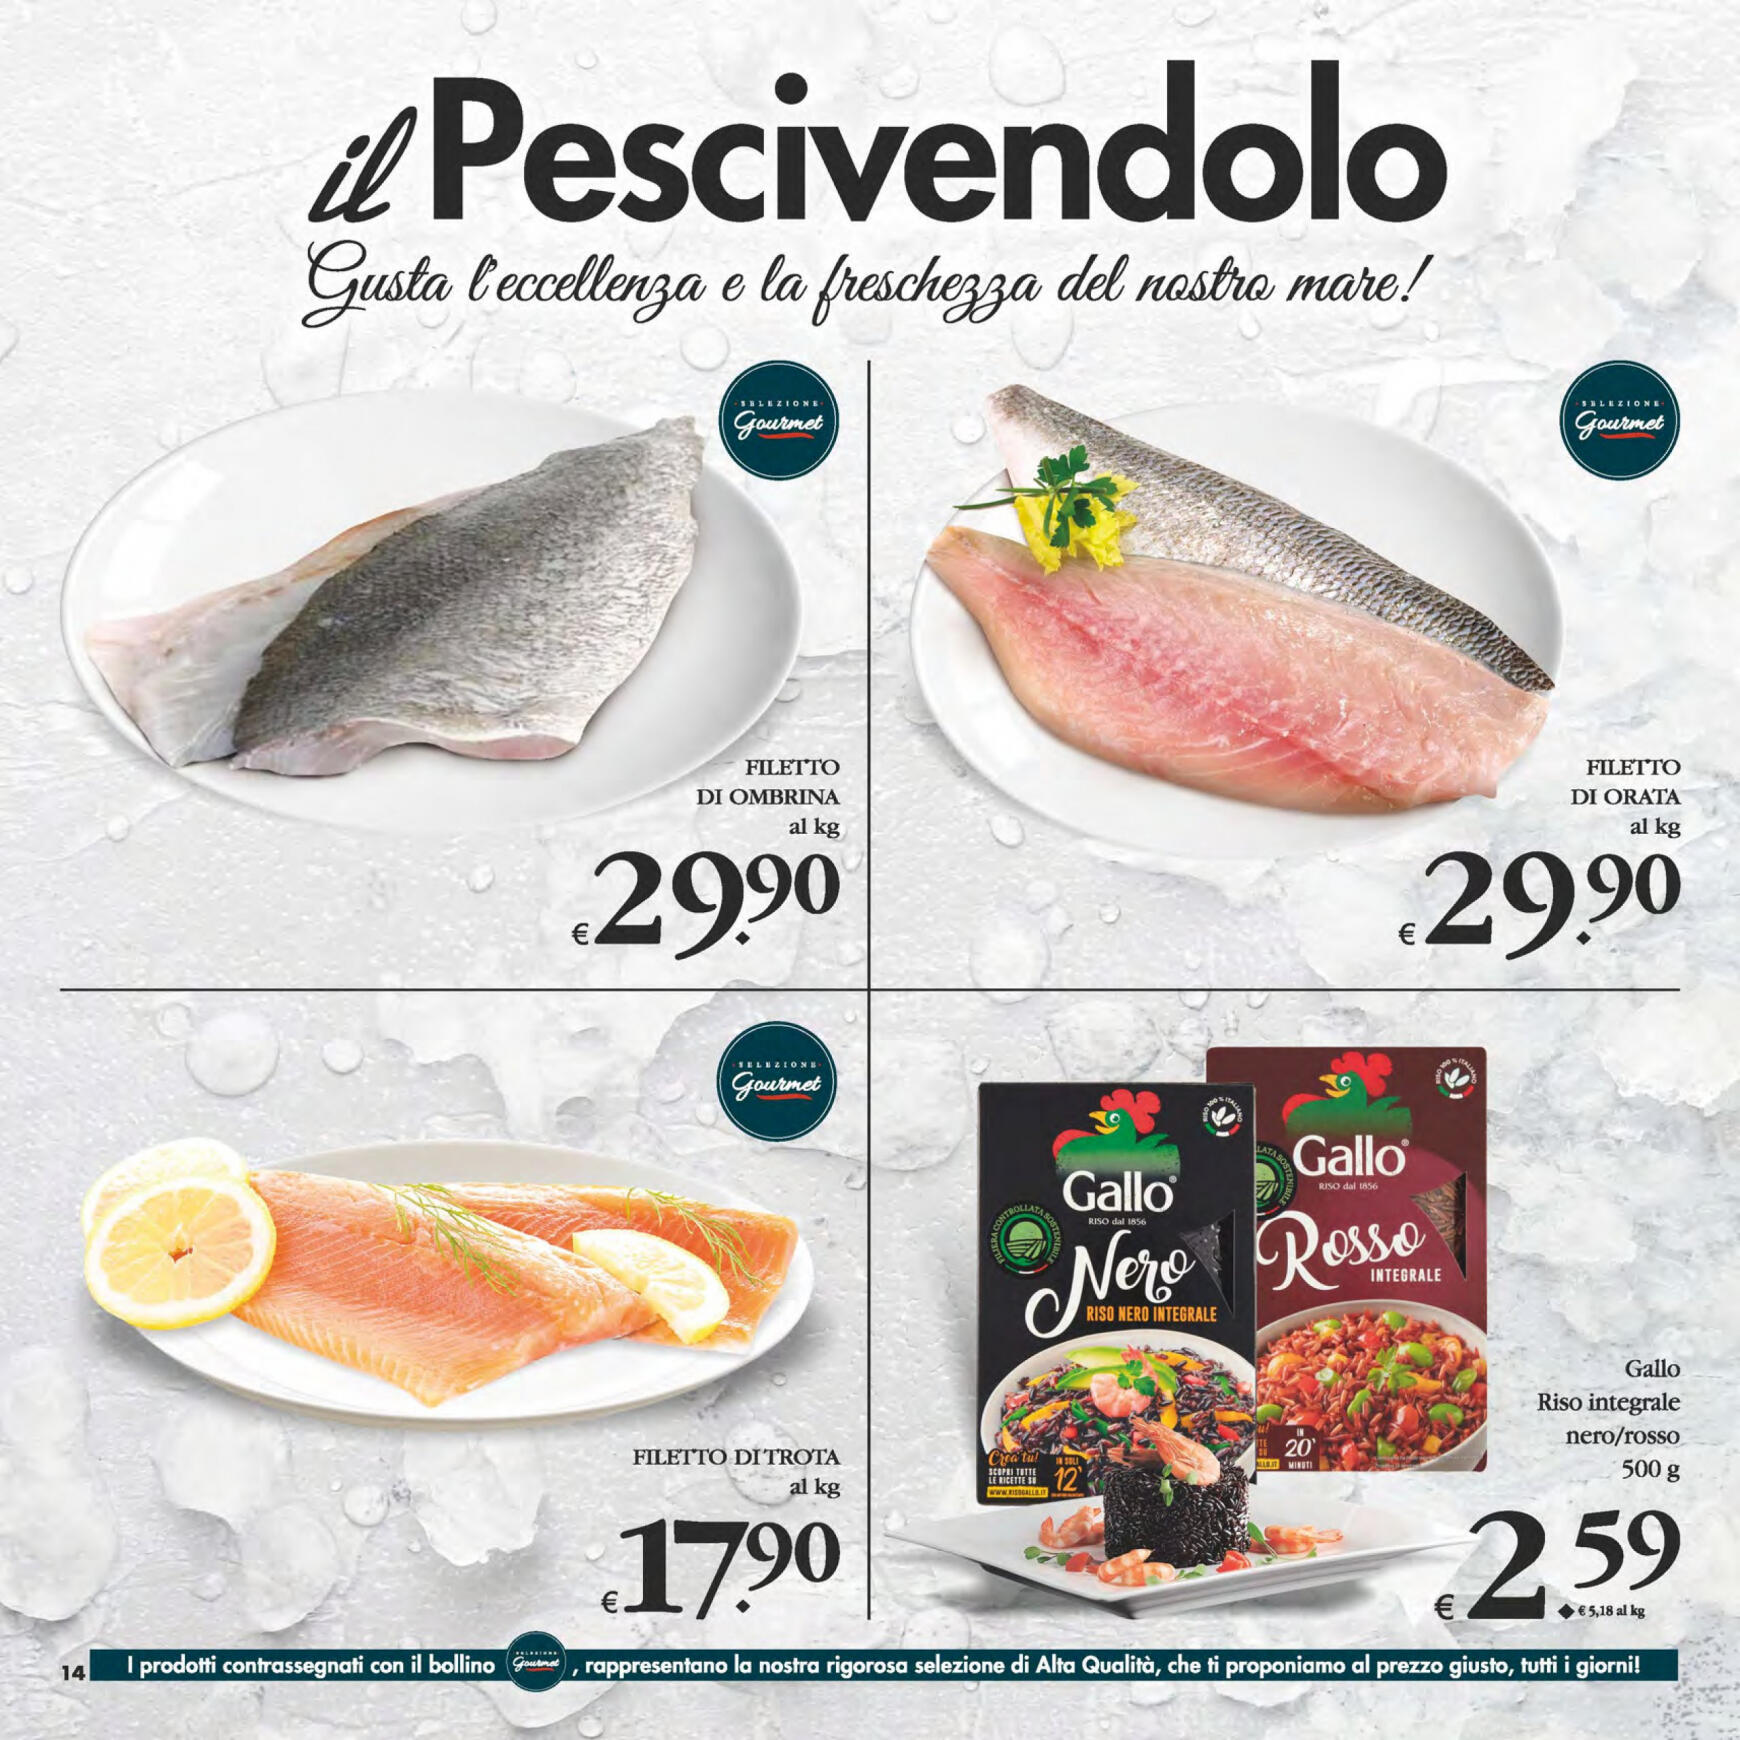 deco - Nuovo volantino Decò - Gourmet 14.05. - 23.05. - page: 14